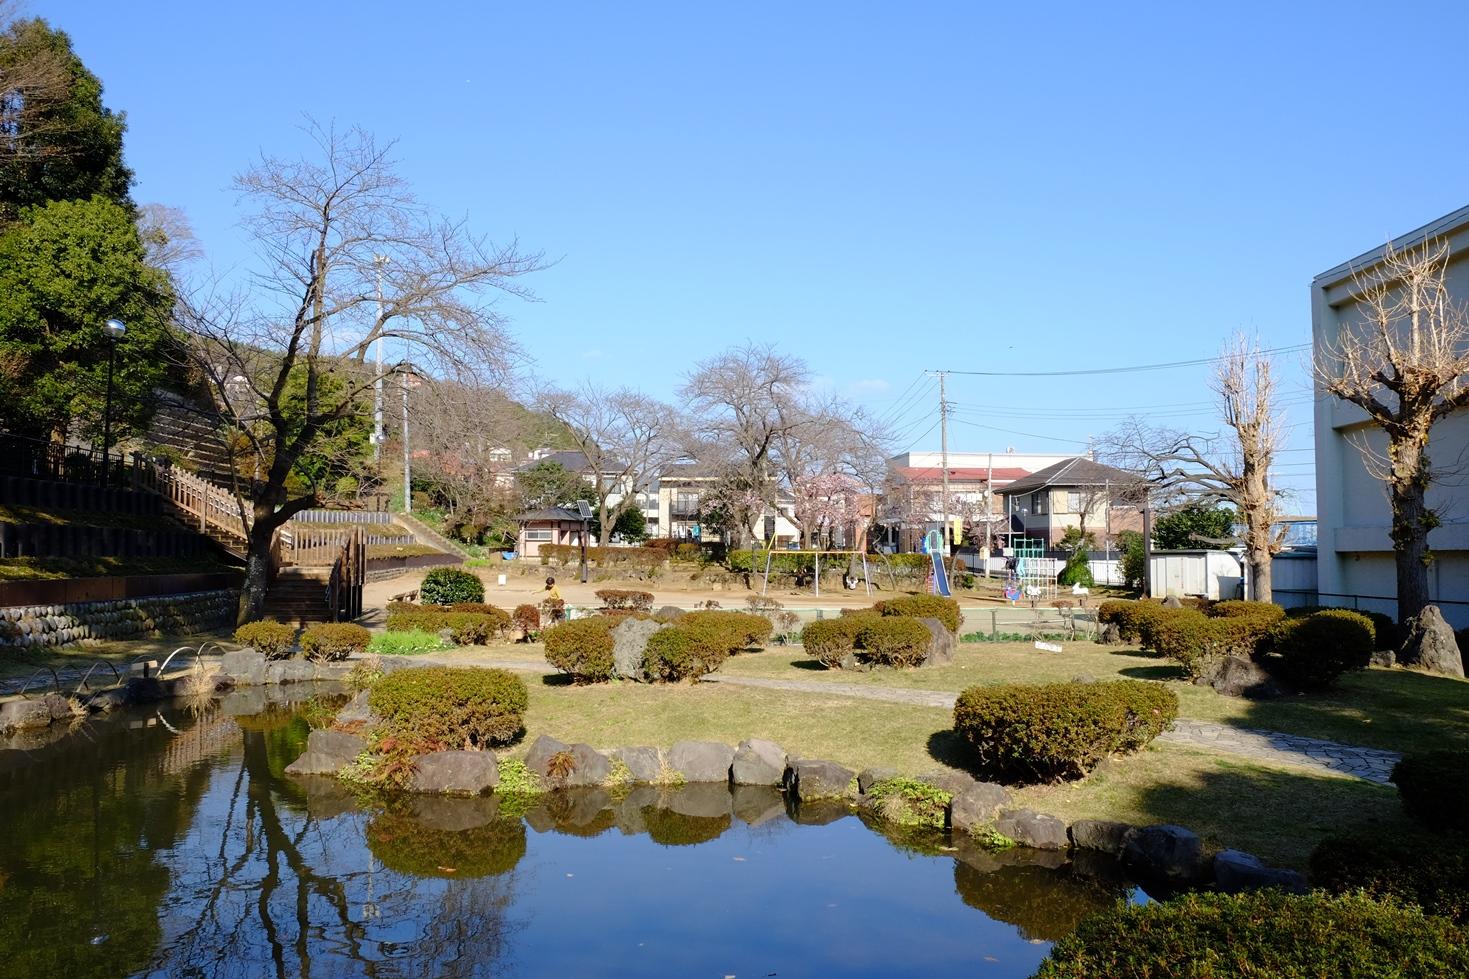 伊東公園の池と低木と遊具スペースの写真